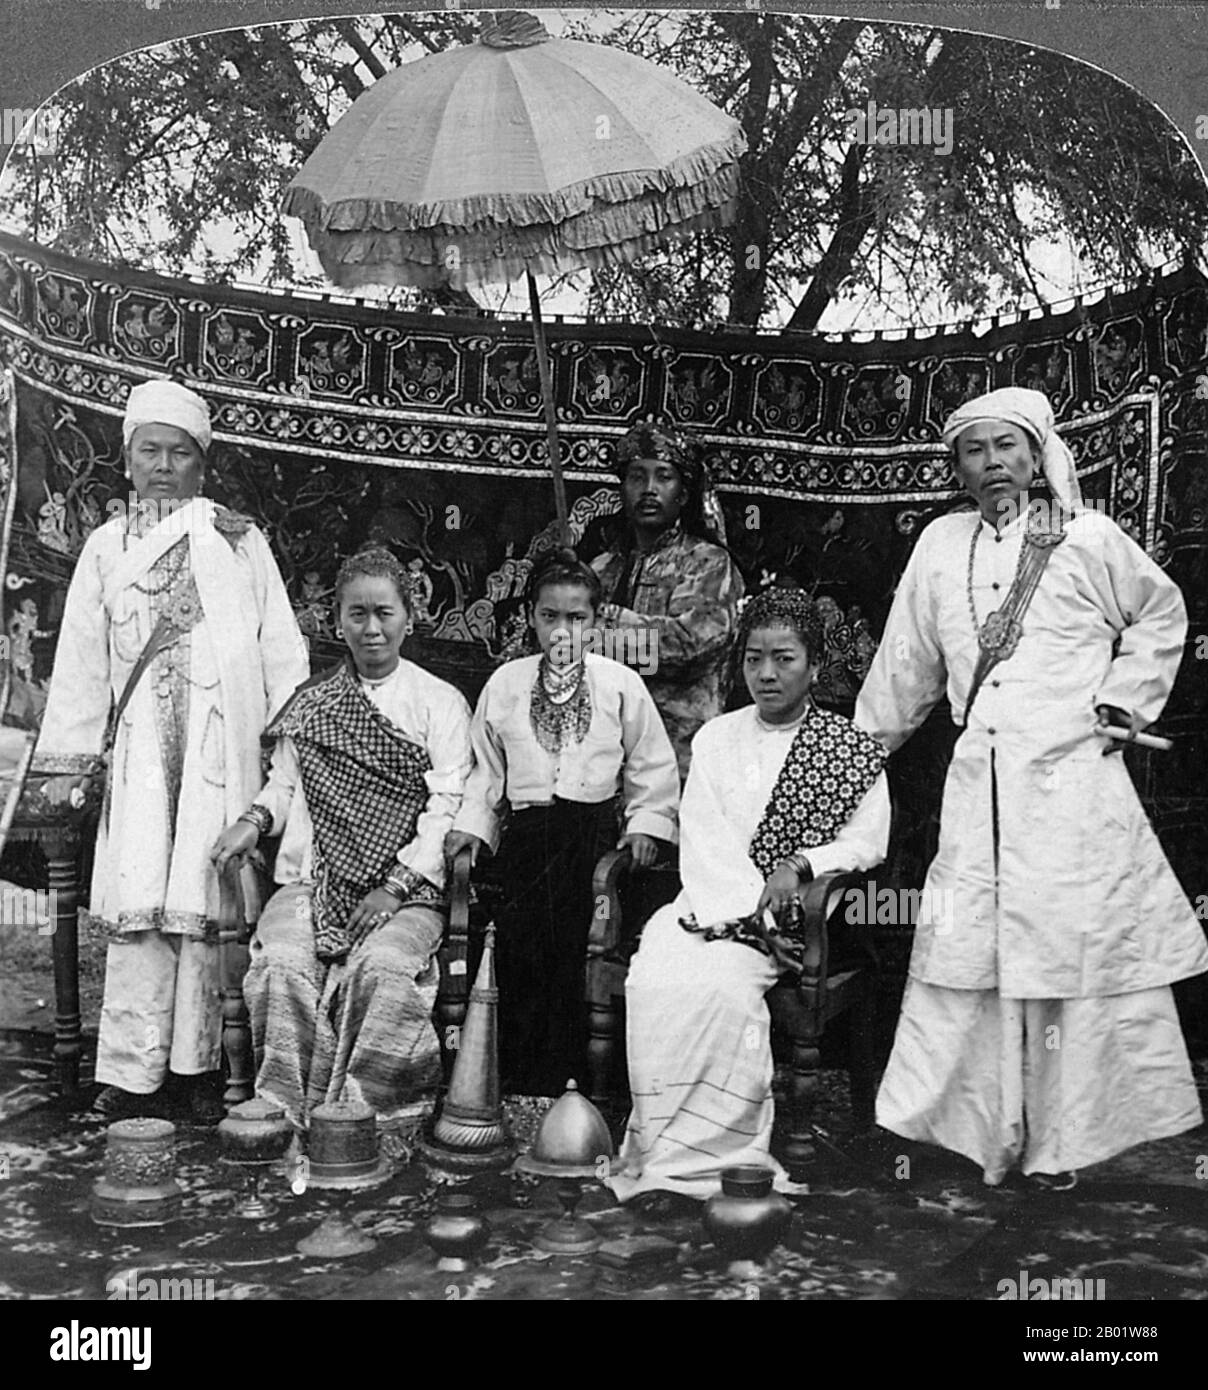 Birma/Myanmar/Indien: Zwei Shan-Häuptlinge mit ihren Ehefrauen in Delhi Durbar, die zu Ehren der Krönung Eduards VII. 1903 gehalten wurden. Saopha, Chaofa oder Sawbwa, war ein königlicher Titel, der von den Herrschern der Shan-Staaten Myanmar (Birma) verwendet wurde. Das Wort bedeutet "König" in den Sprachen Shan und Tai. In einigen alten chinesischen Literatur wurde es als 詔 (Pinyin: Zhào), zum Beispiel sechs Zhao und Nanzhao, aufgezeichnet. Stockfoto